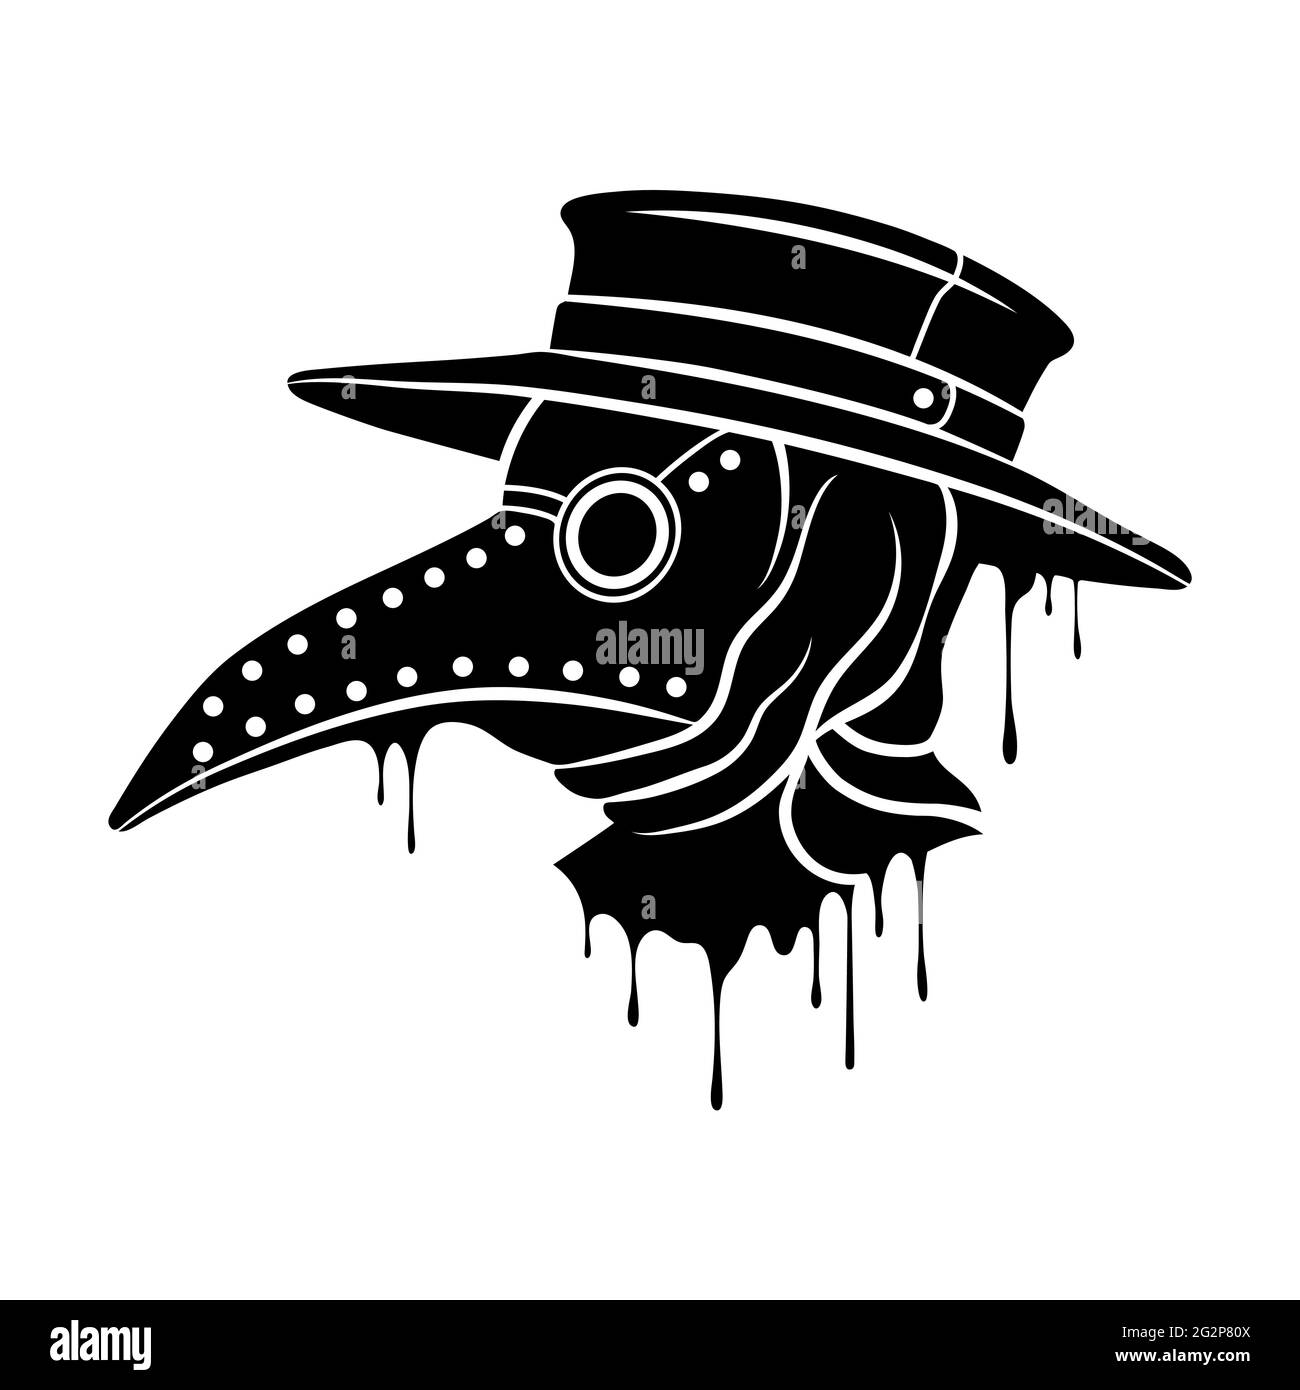 Cómo dibujar la mascara de peste negra  How to draw the black plague mask  